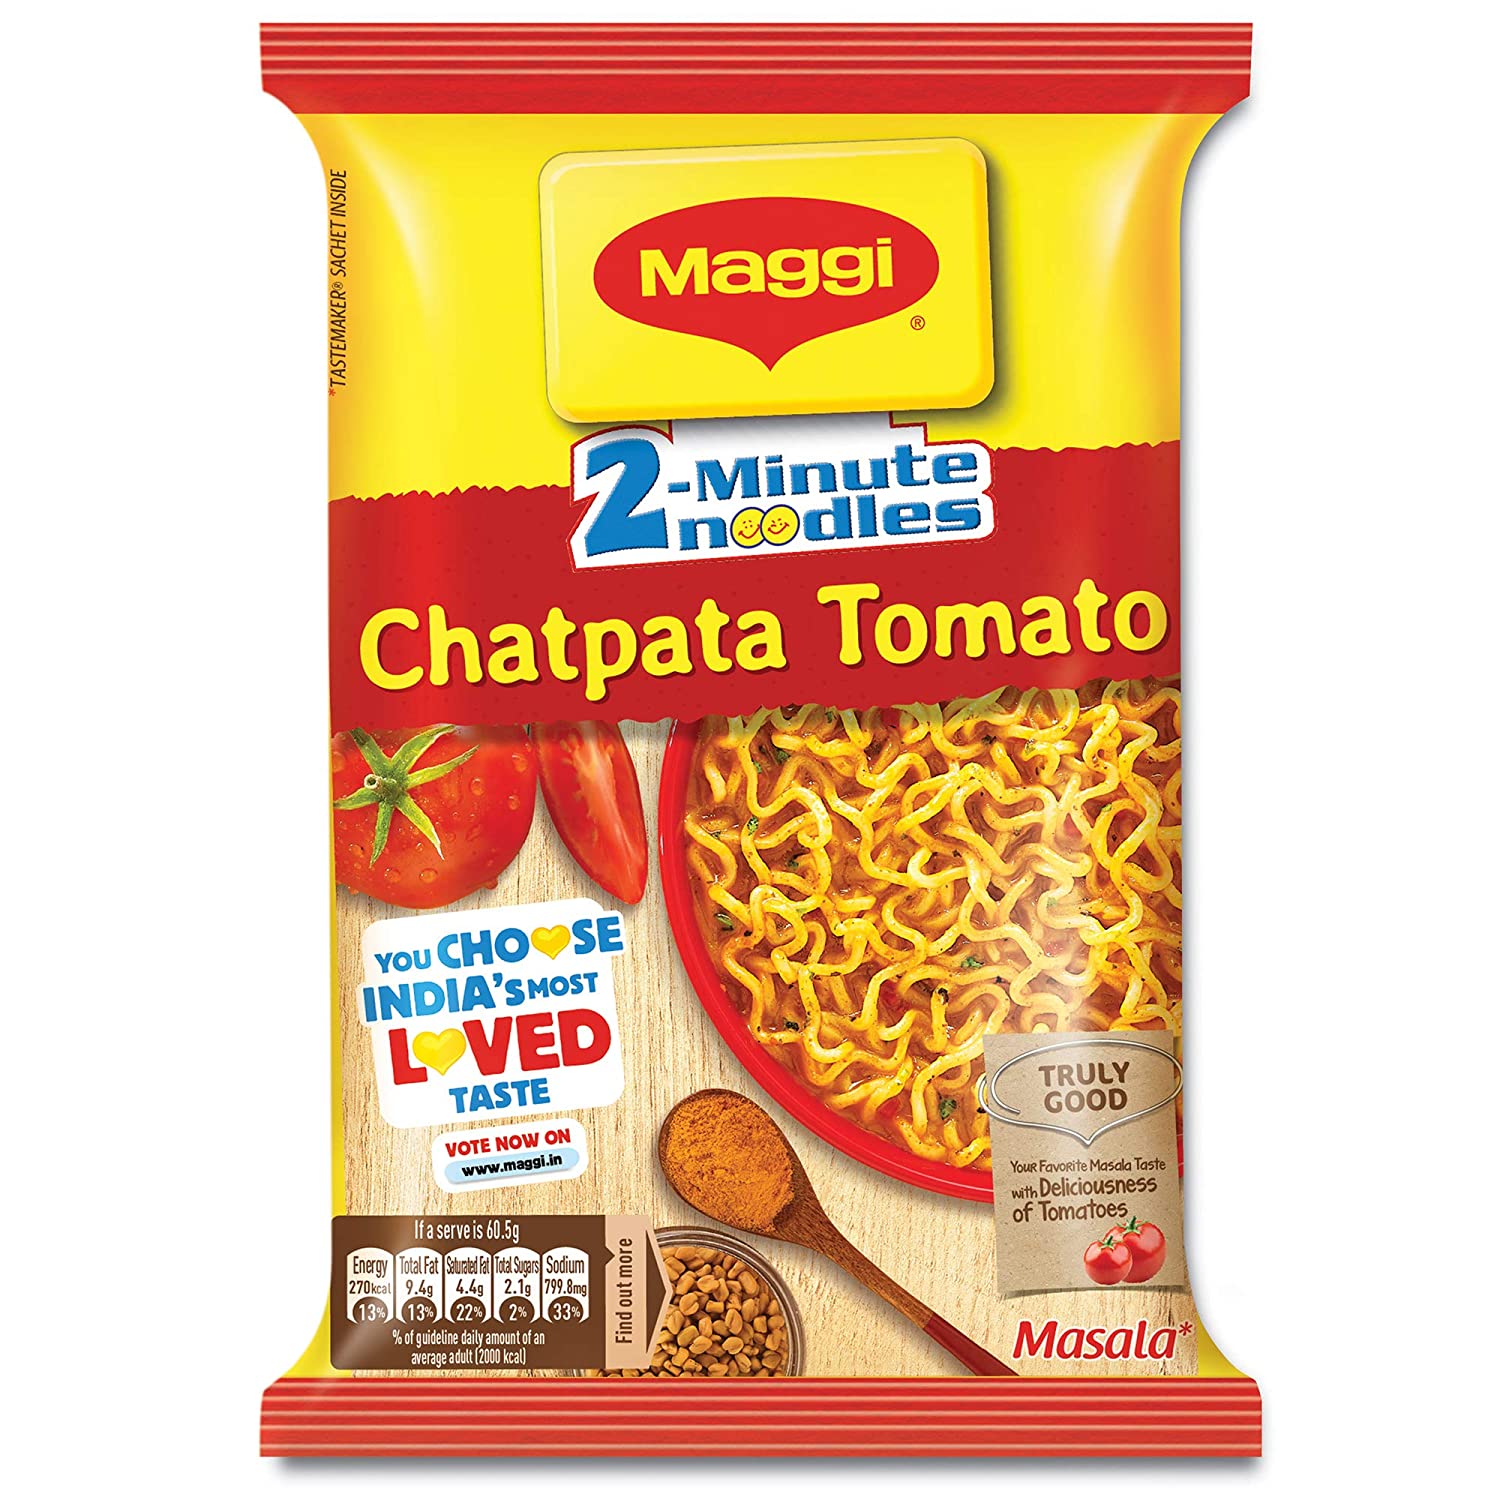 MAGGI 2-Minute Instant Noodles, Chatpata Tomato Masala – 60.5g